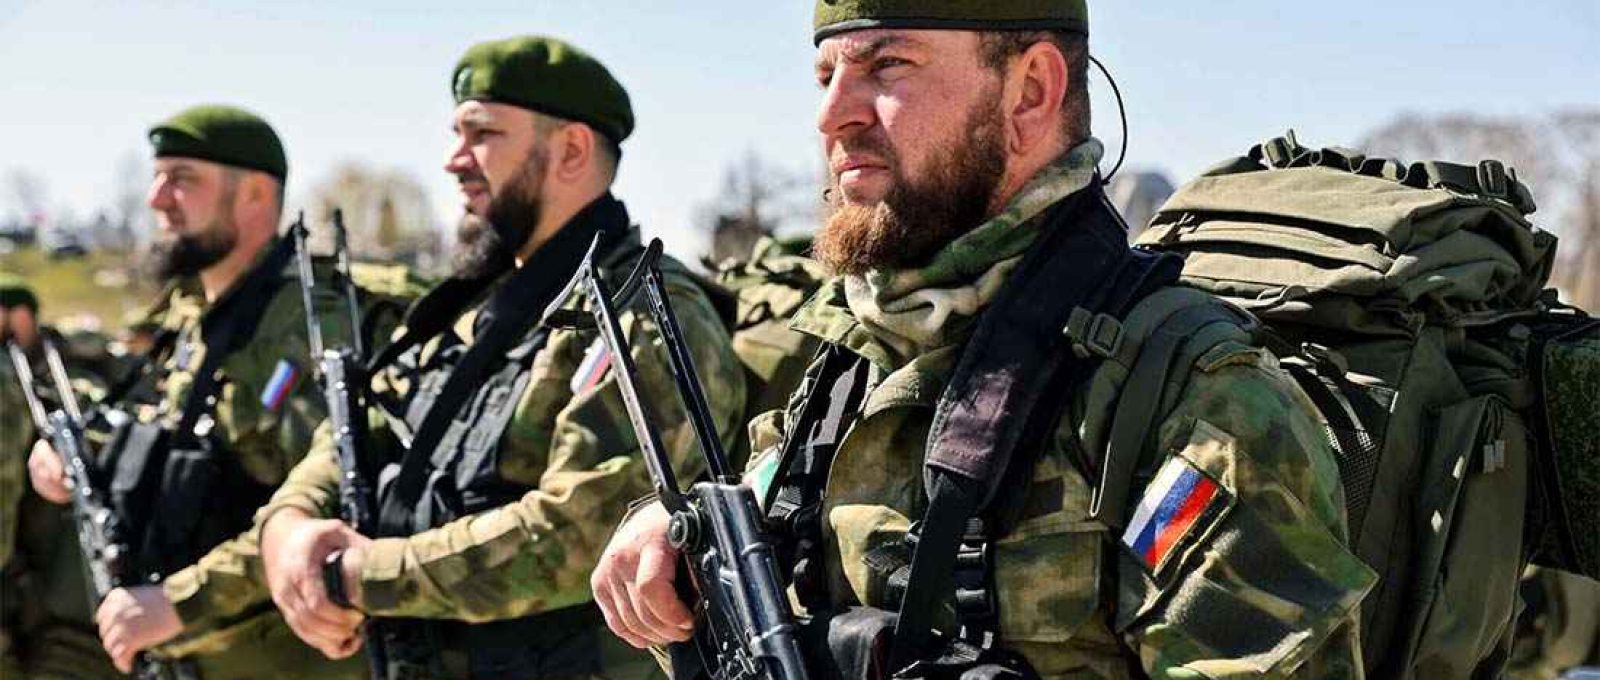 Soldados em inspeção de tropas na residência do líder Ramzan Kadyrov na região da Chechênia no norte do Cáucaso, na Rússia (Tass).